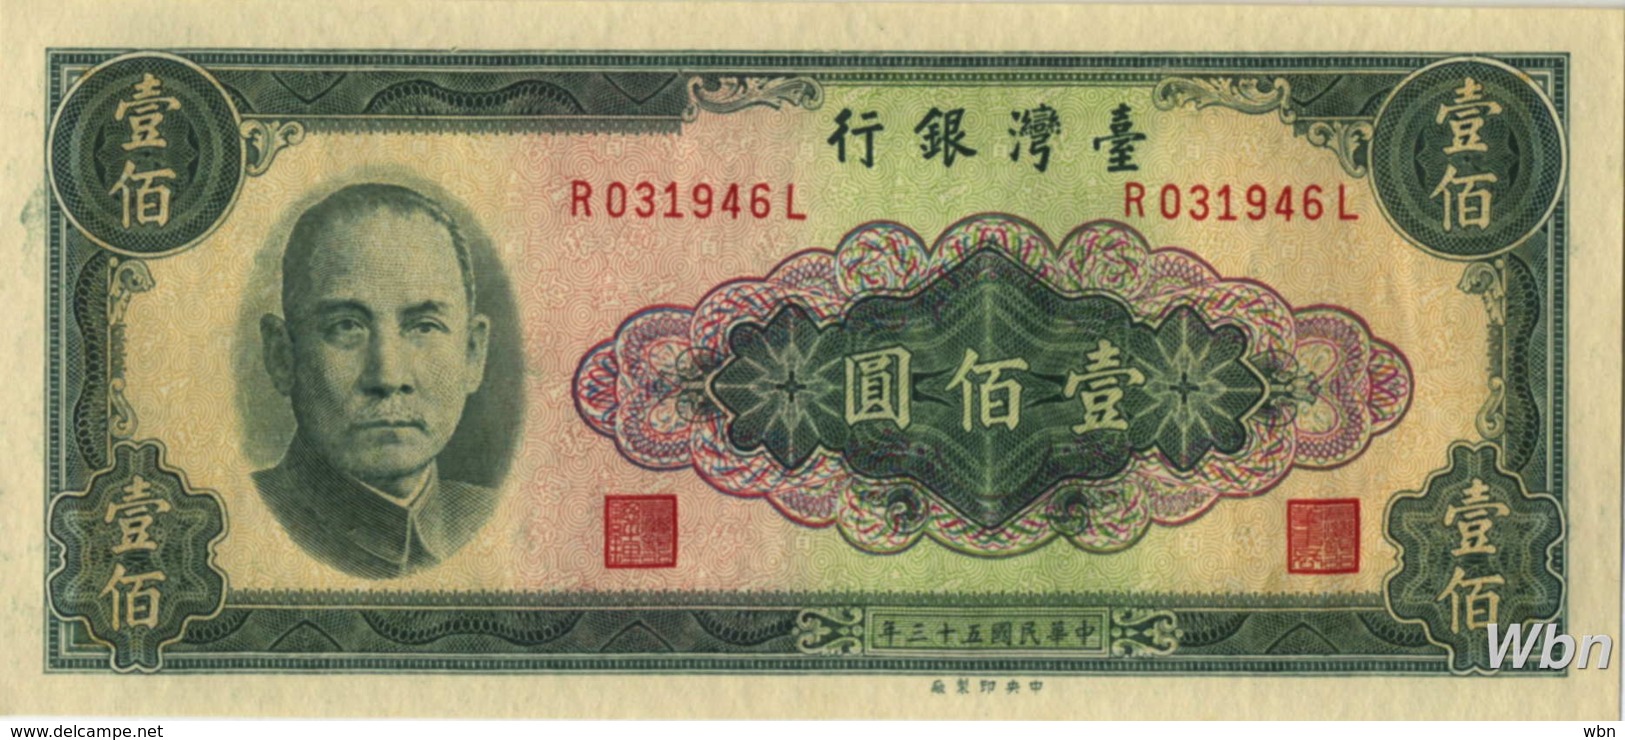 Taiwan 100 NT$ (P1977)  1964 -UNC- - Taiwan